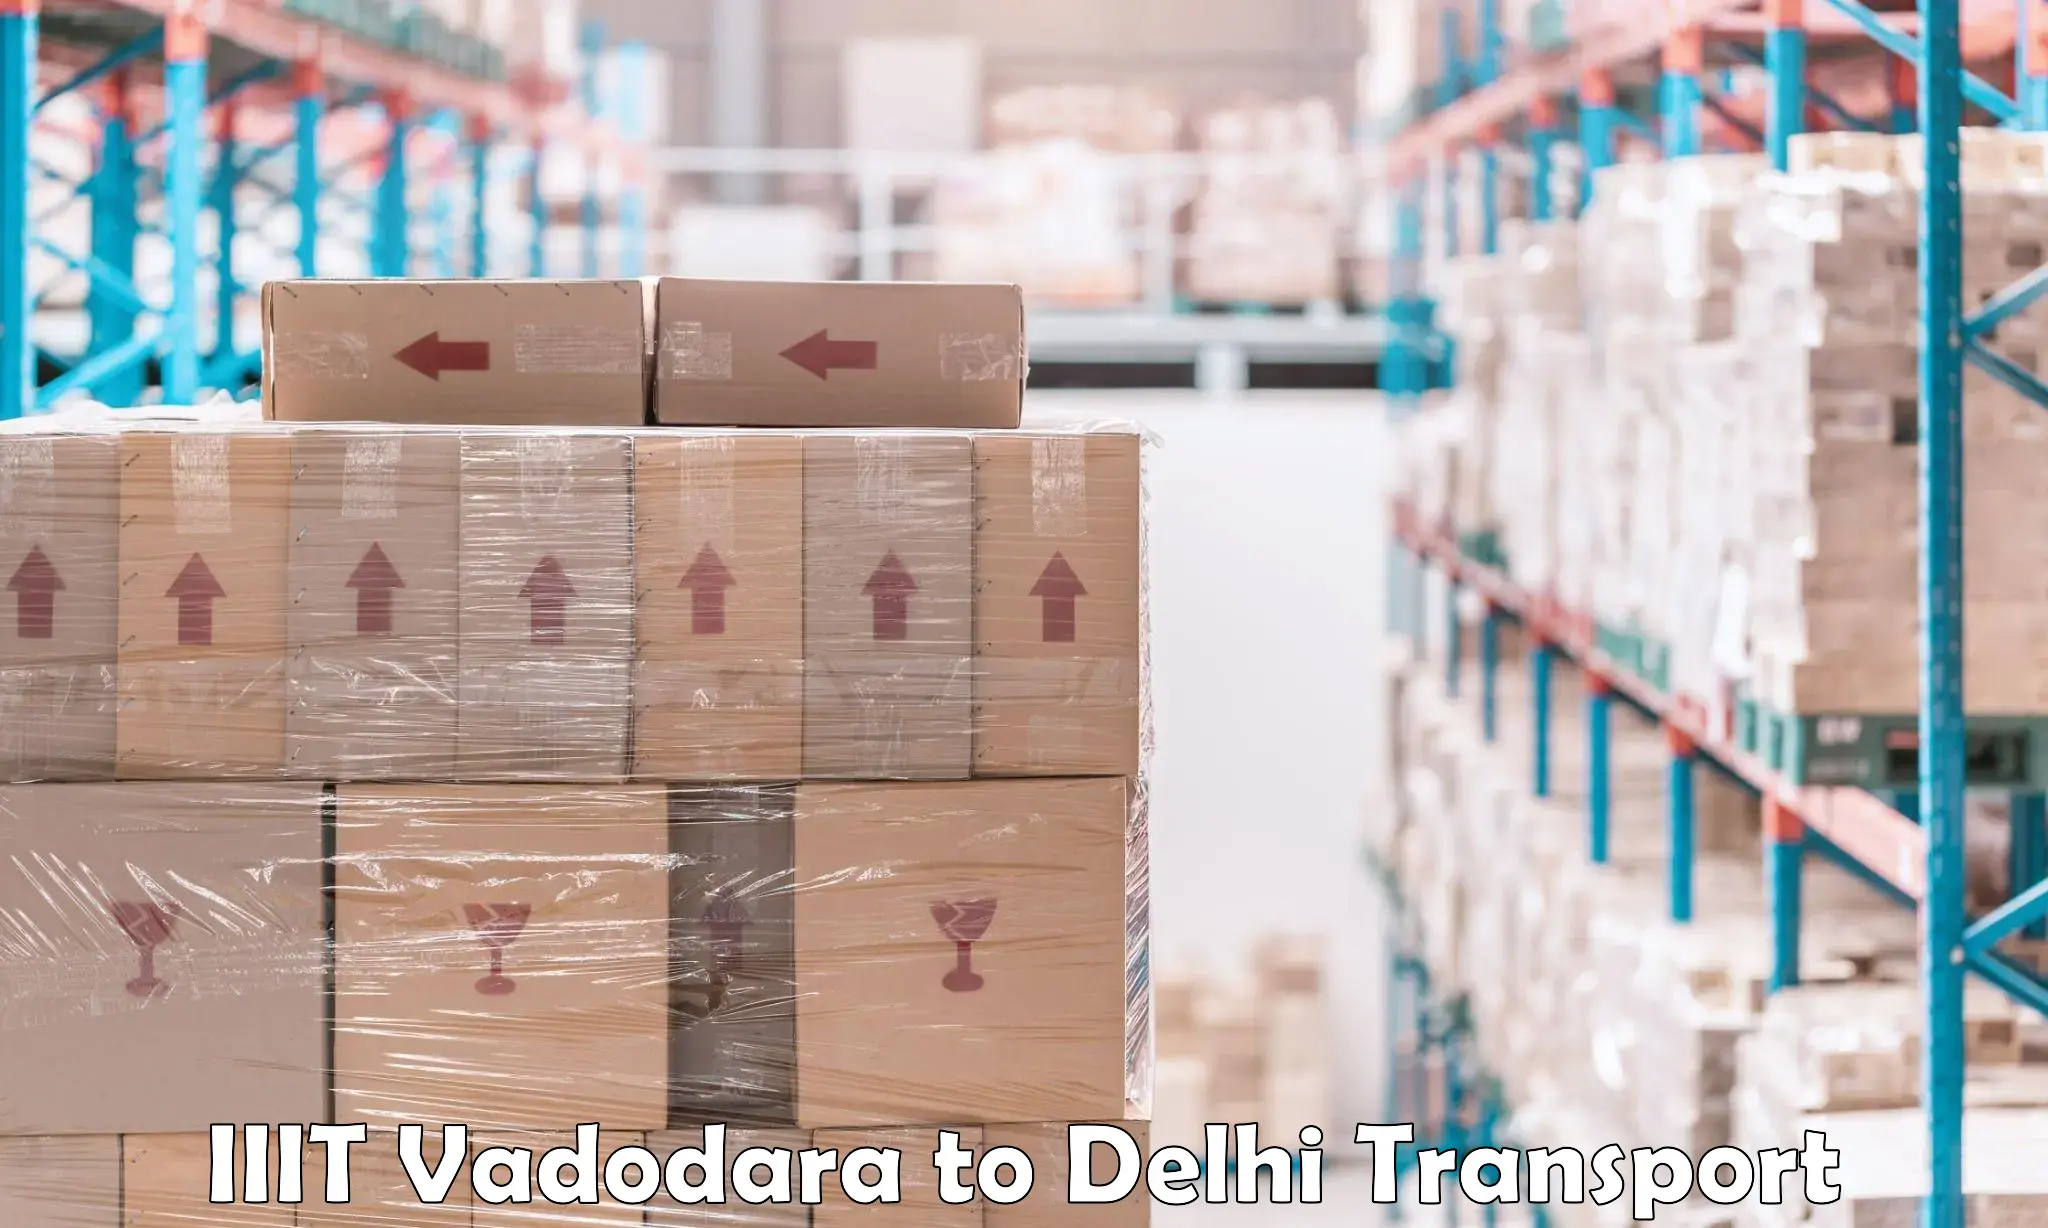 Logistics transportation services IIIT Vadodara to Delhi